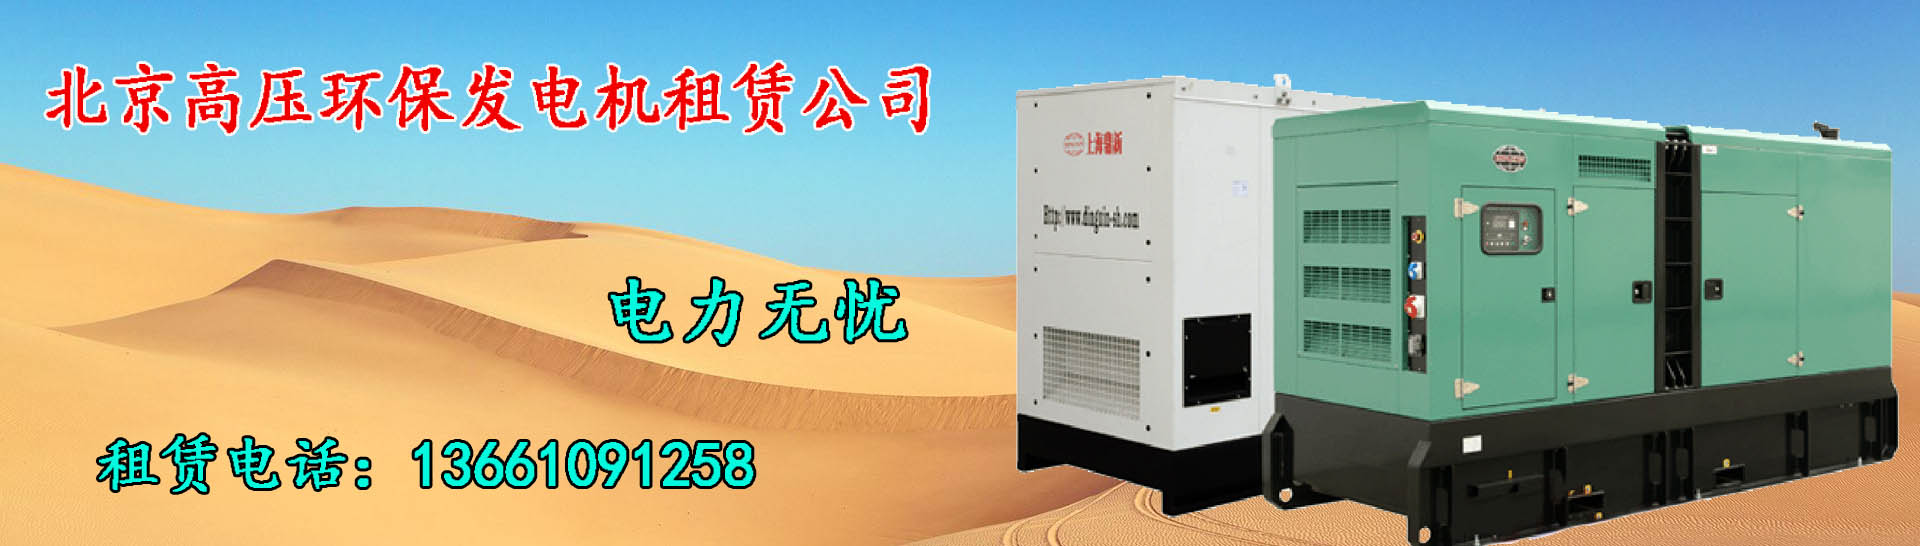 北京高压环保柴油发电机公司是一家专业的北京发电机租赁公司，关注发电机服务十五年